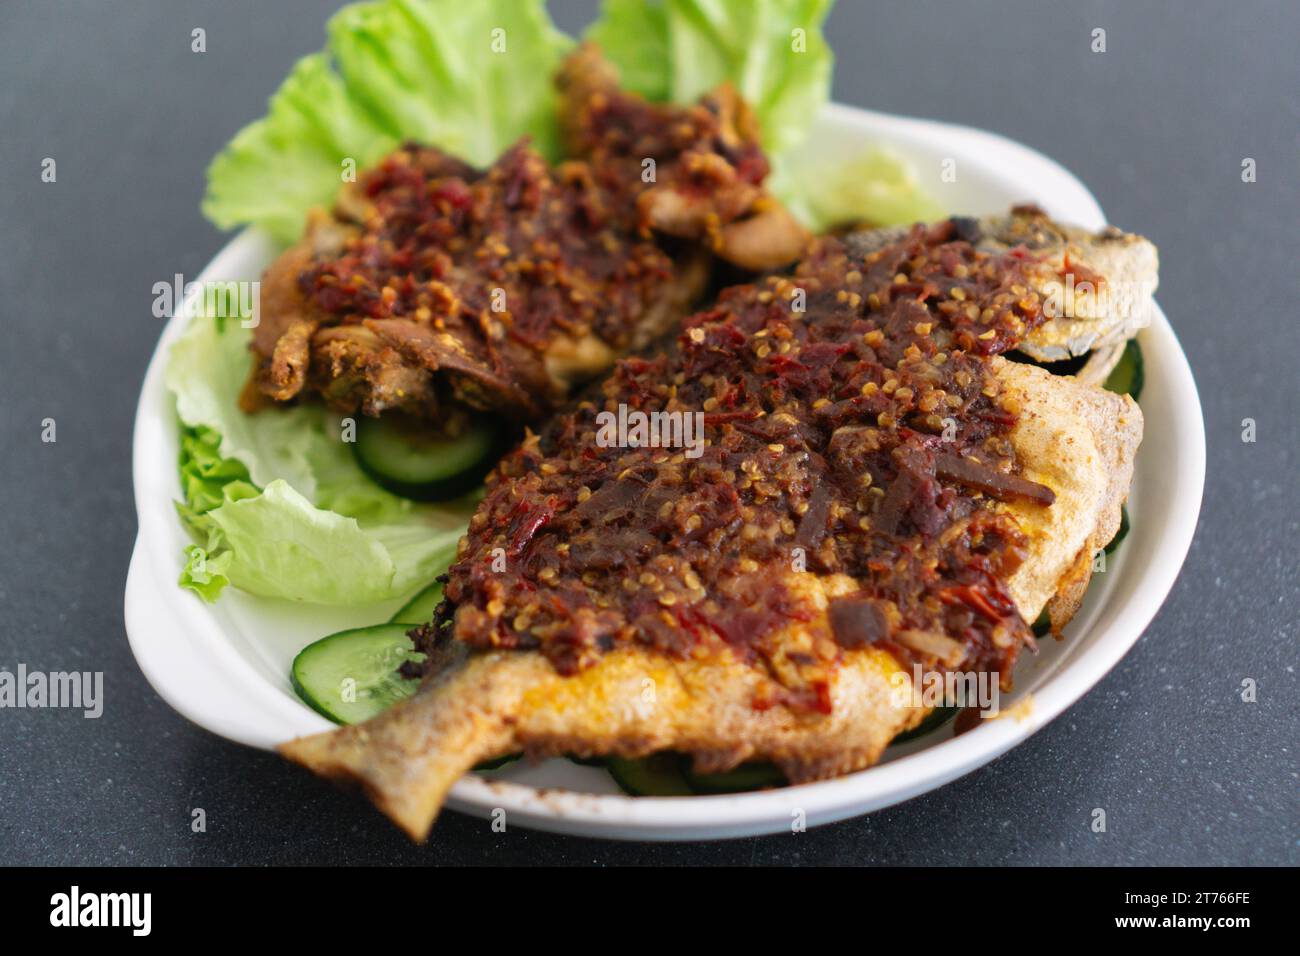 Ikan Goreng Masak Sambal, gebratener Fisch mit Chilipaste. Traditionelles indonesisches und malaysisches Gericht Stockfoto